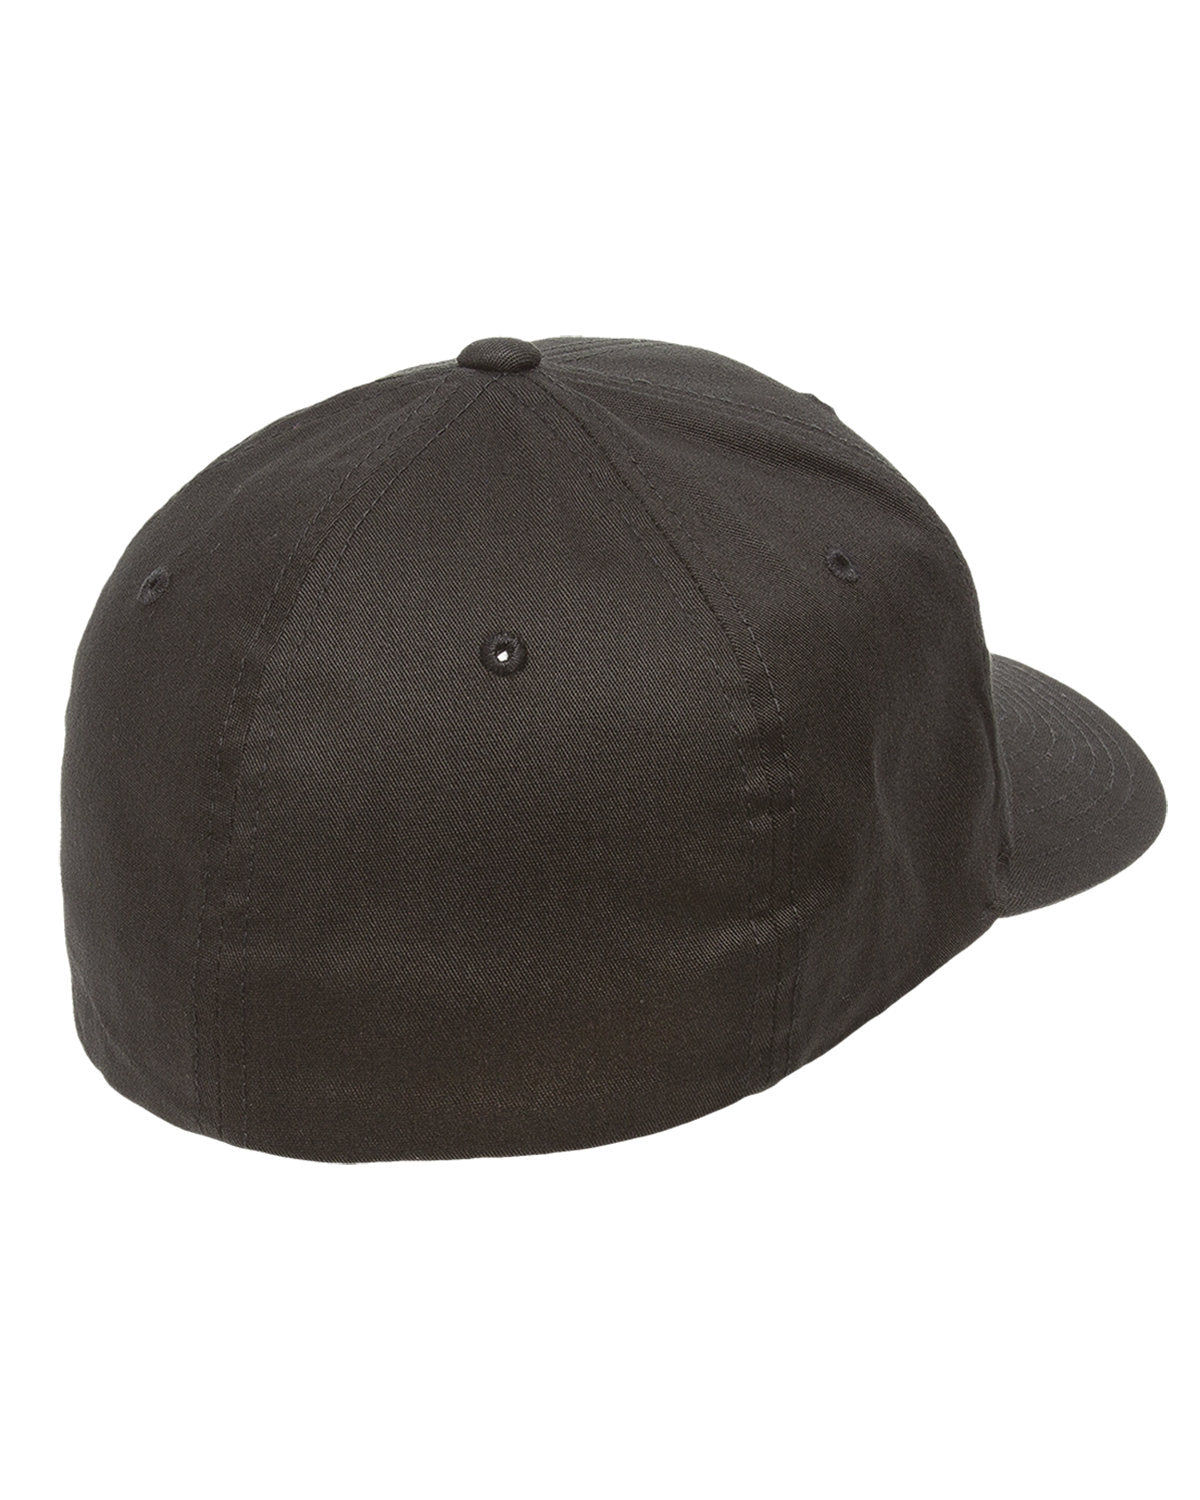 Flexfit Value Cotton Twill Custom Caps, Black